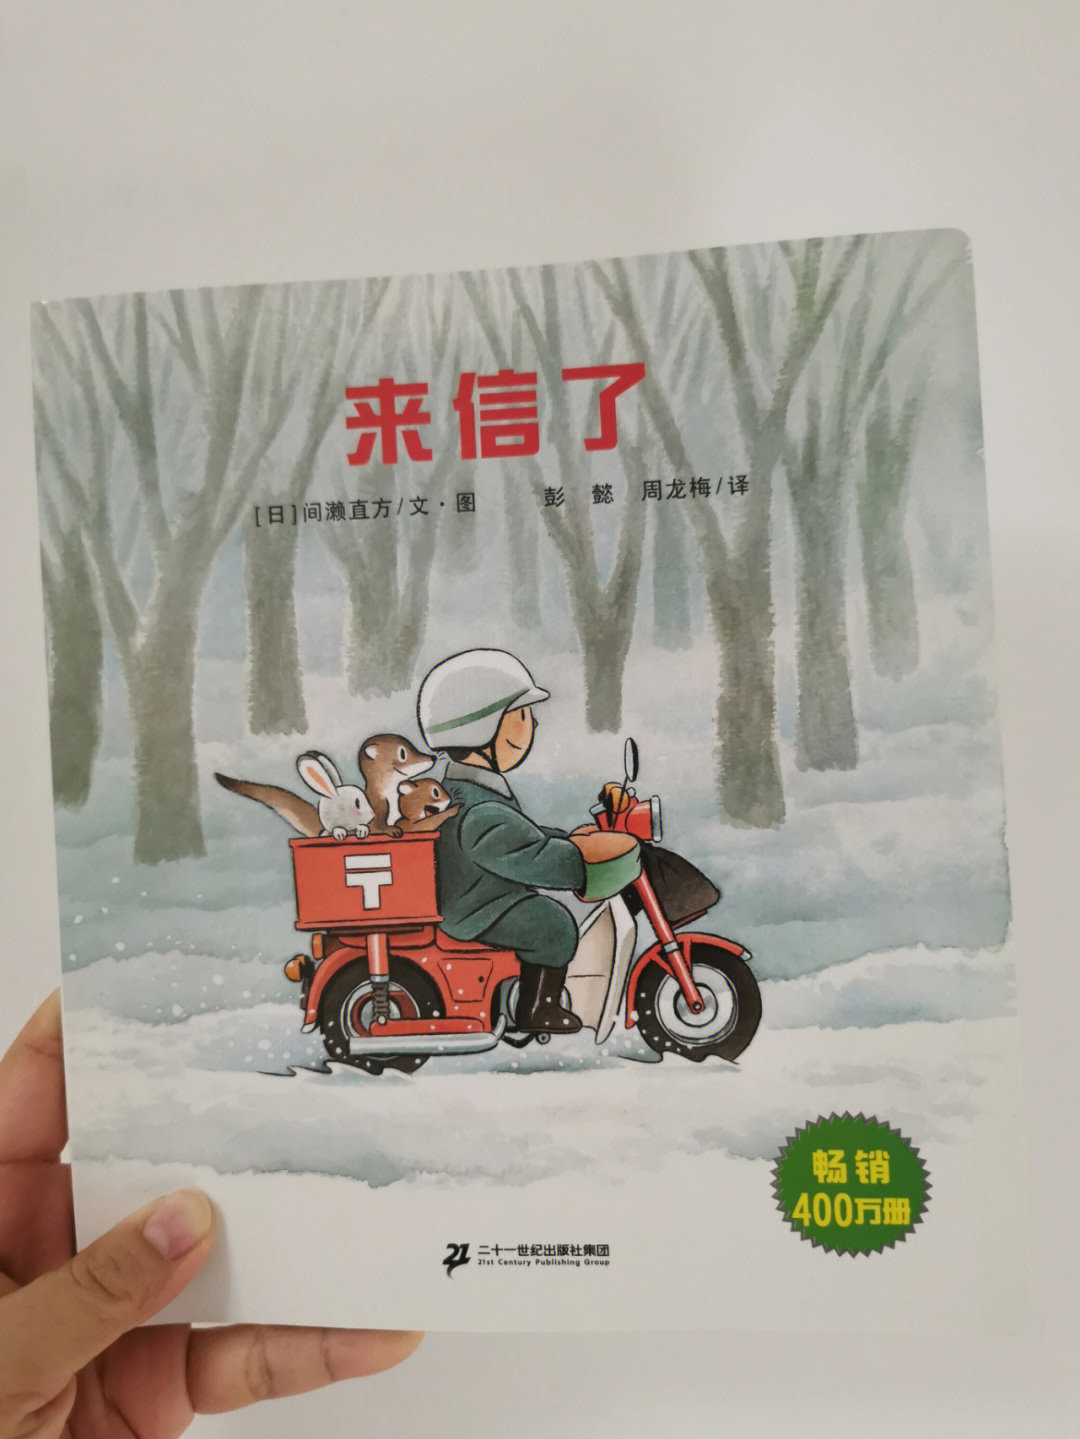 01在一个积雪的深山小村,邮递员叔叔骑着摩托车去送信,他翻过小河